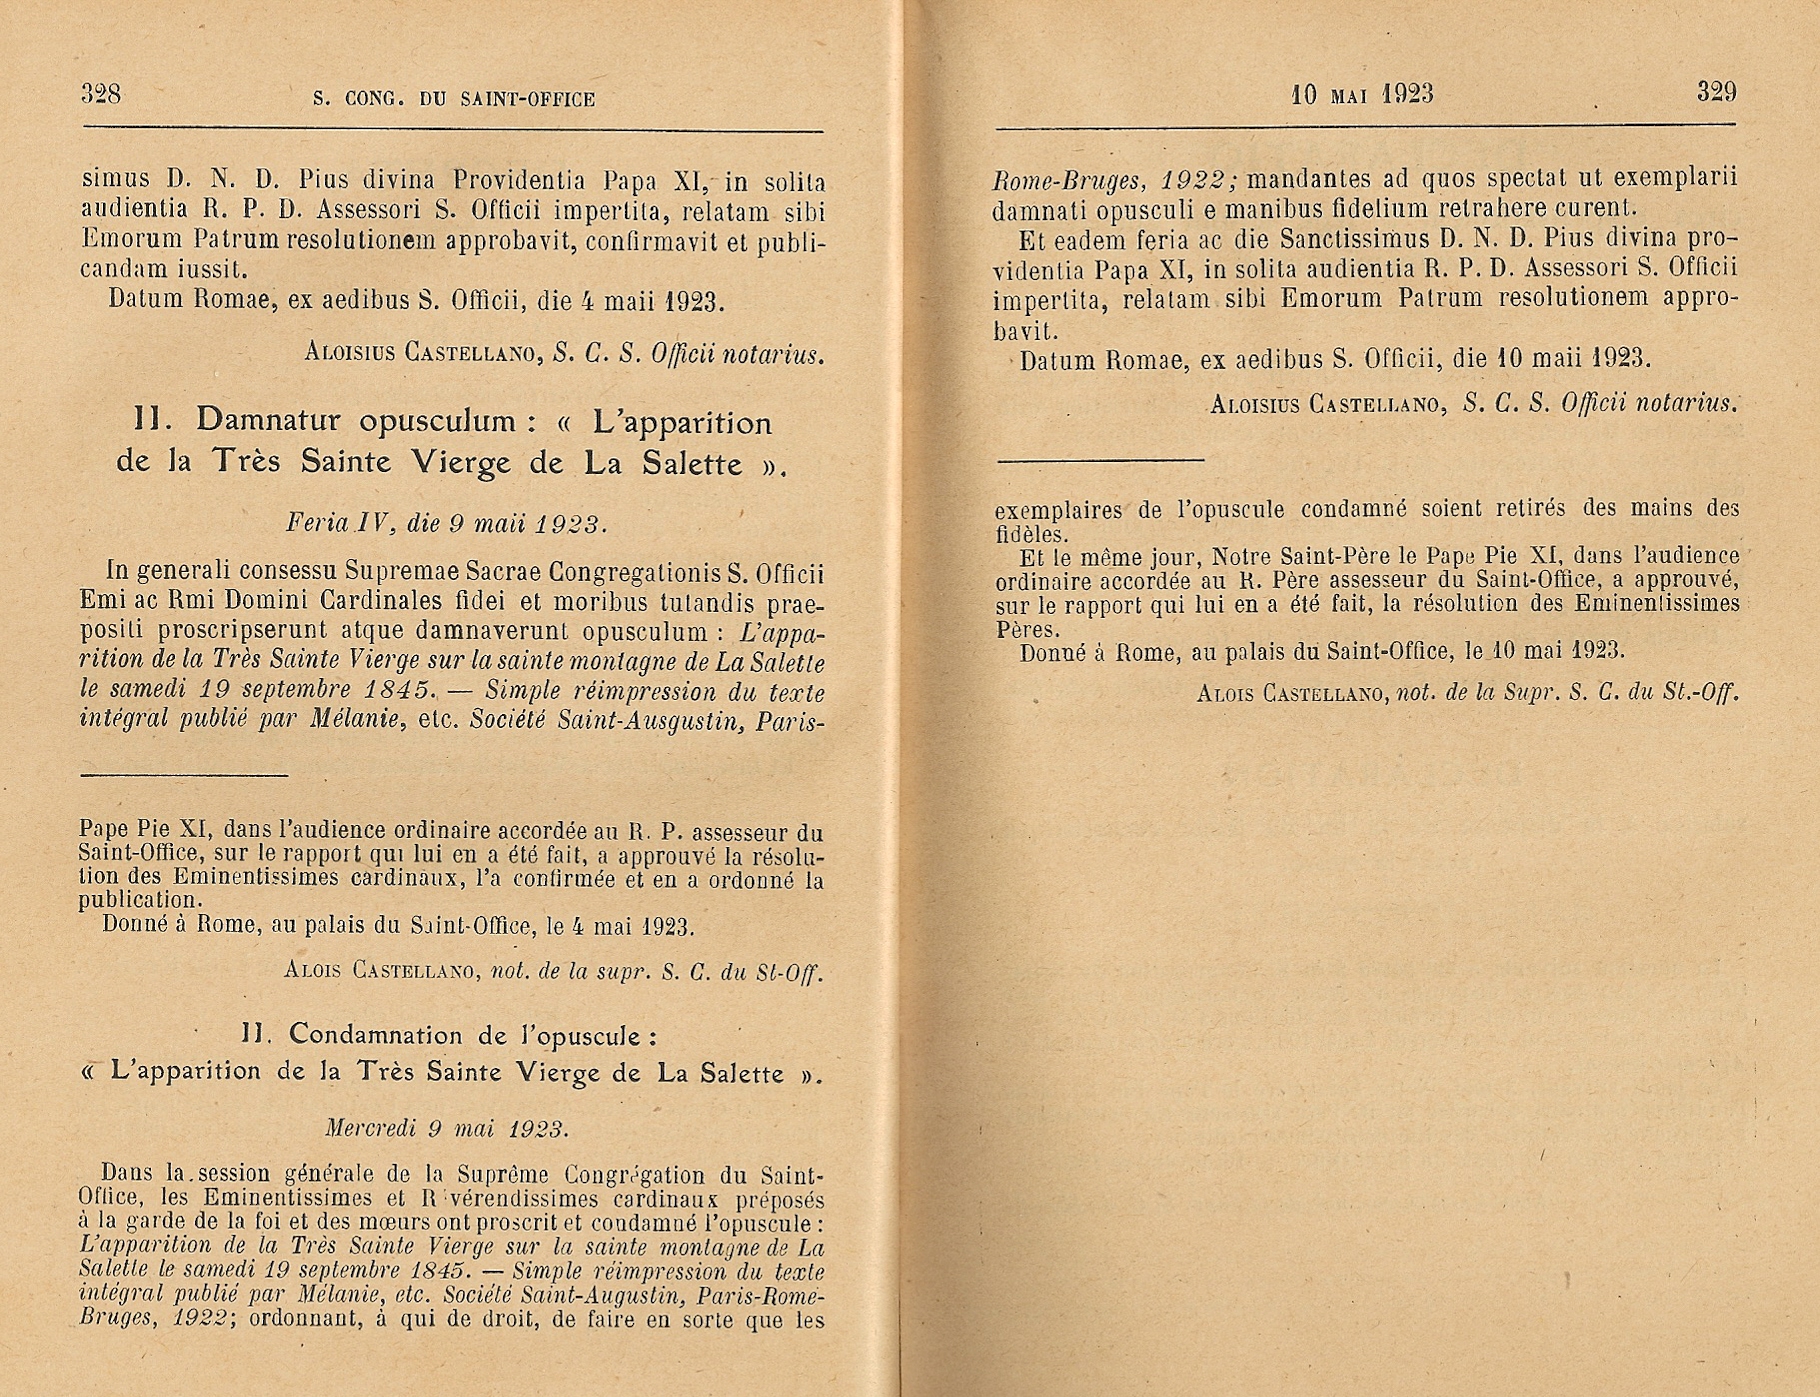 Le SECRET de MÉLANIE dit de LA SALETTE, mis à l'INDEX (10 mai 1923) Condamnation-du-f...-m-lanie-55cfcee